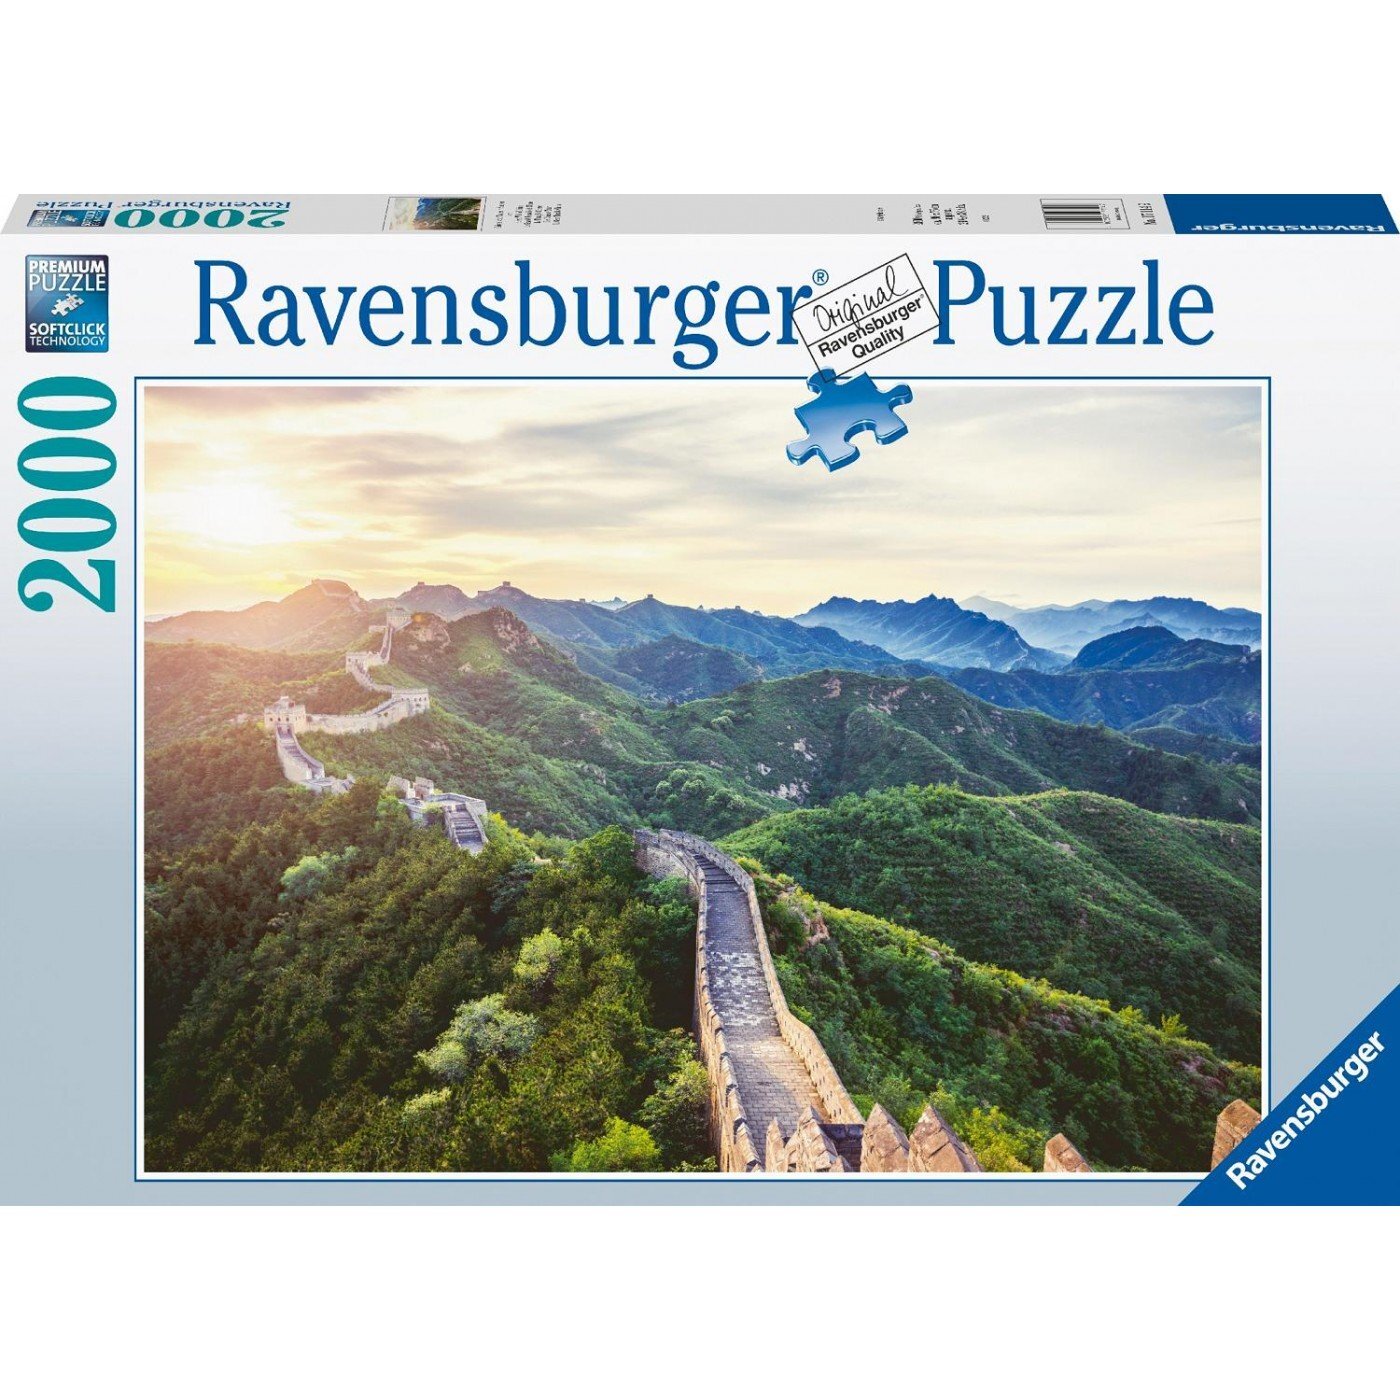 Ravensburger Puslespil - Great Wall of China 2000 brikker